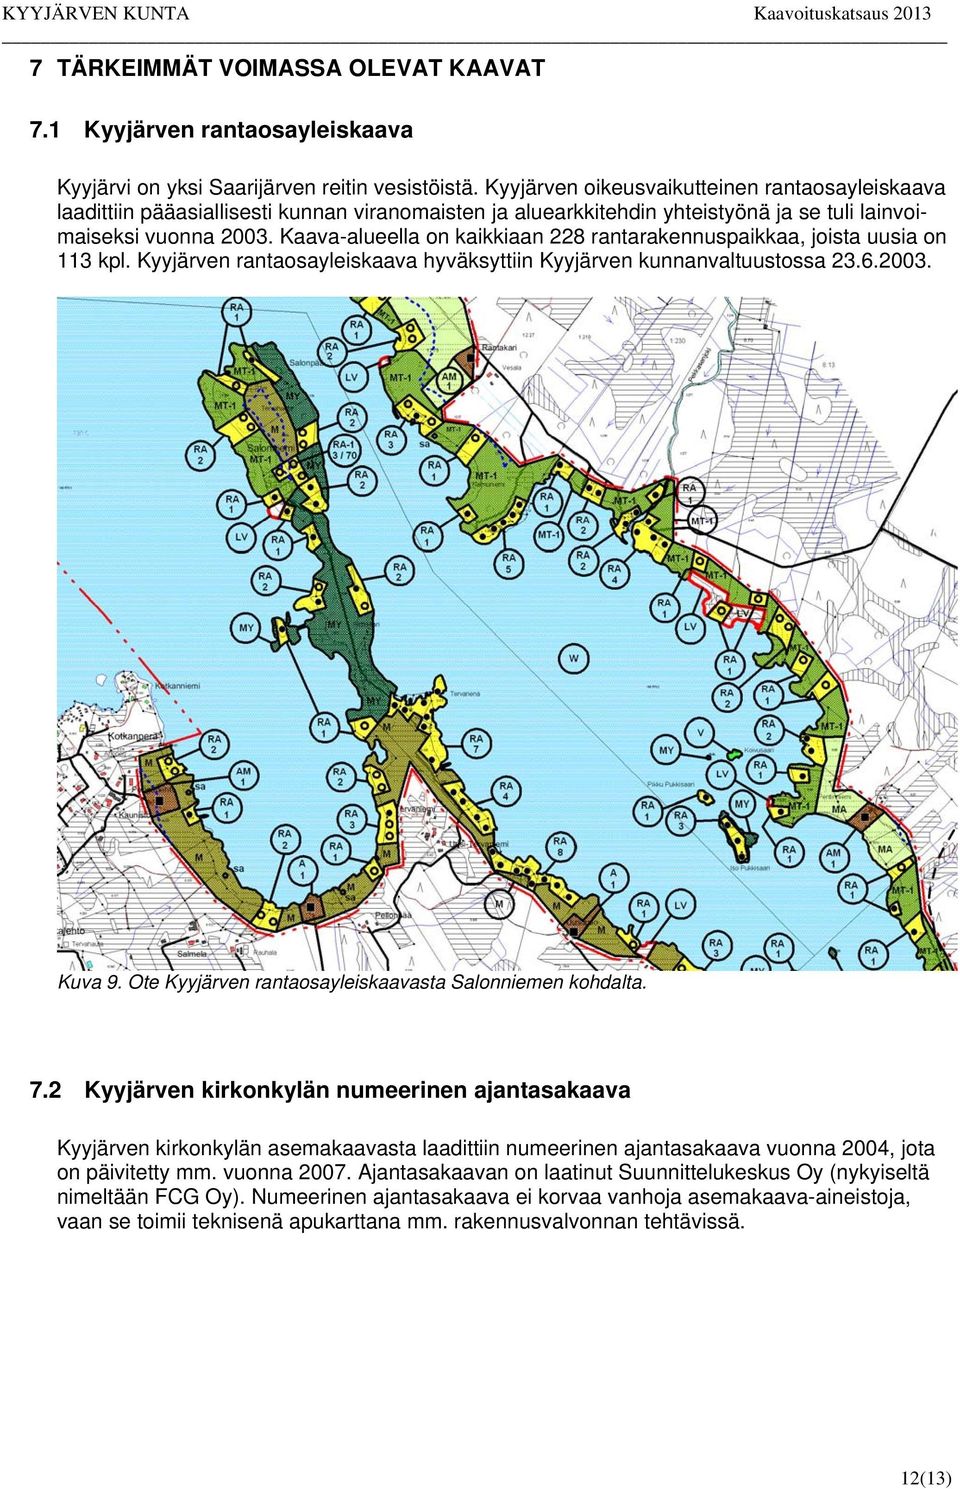 Kaava-alueella on kaikkiaan 228 rantarakennuspaikkaa, joista uusia on 113 kpl. Kyyjärven rantaosayleiskaava hyväksyttiin Kyyjärven kunnanvaltuustossa 23.6.2003. Kuva 9.